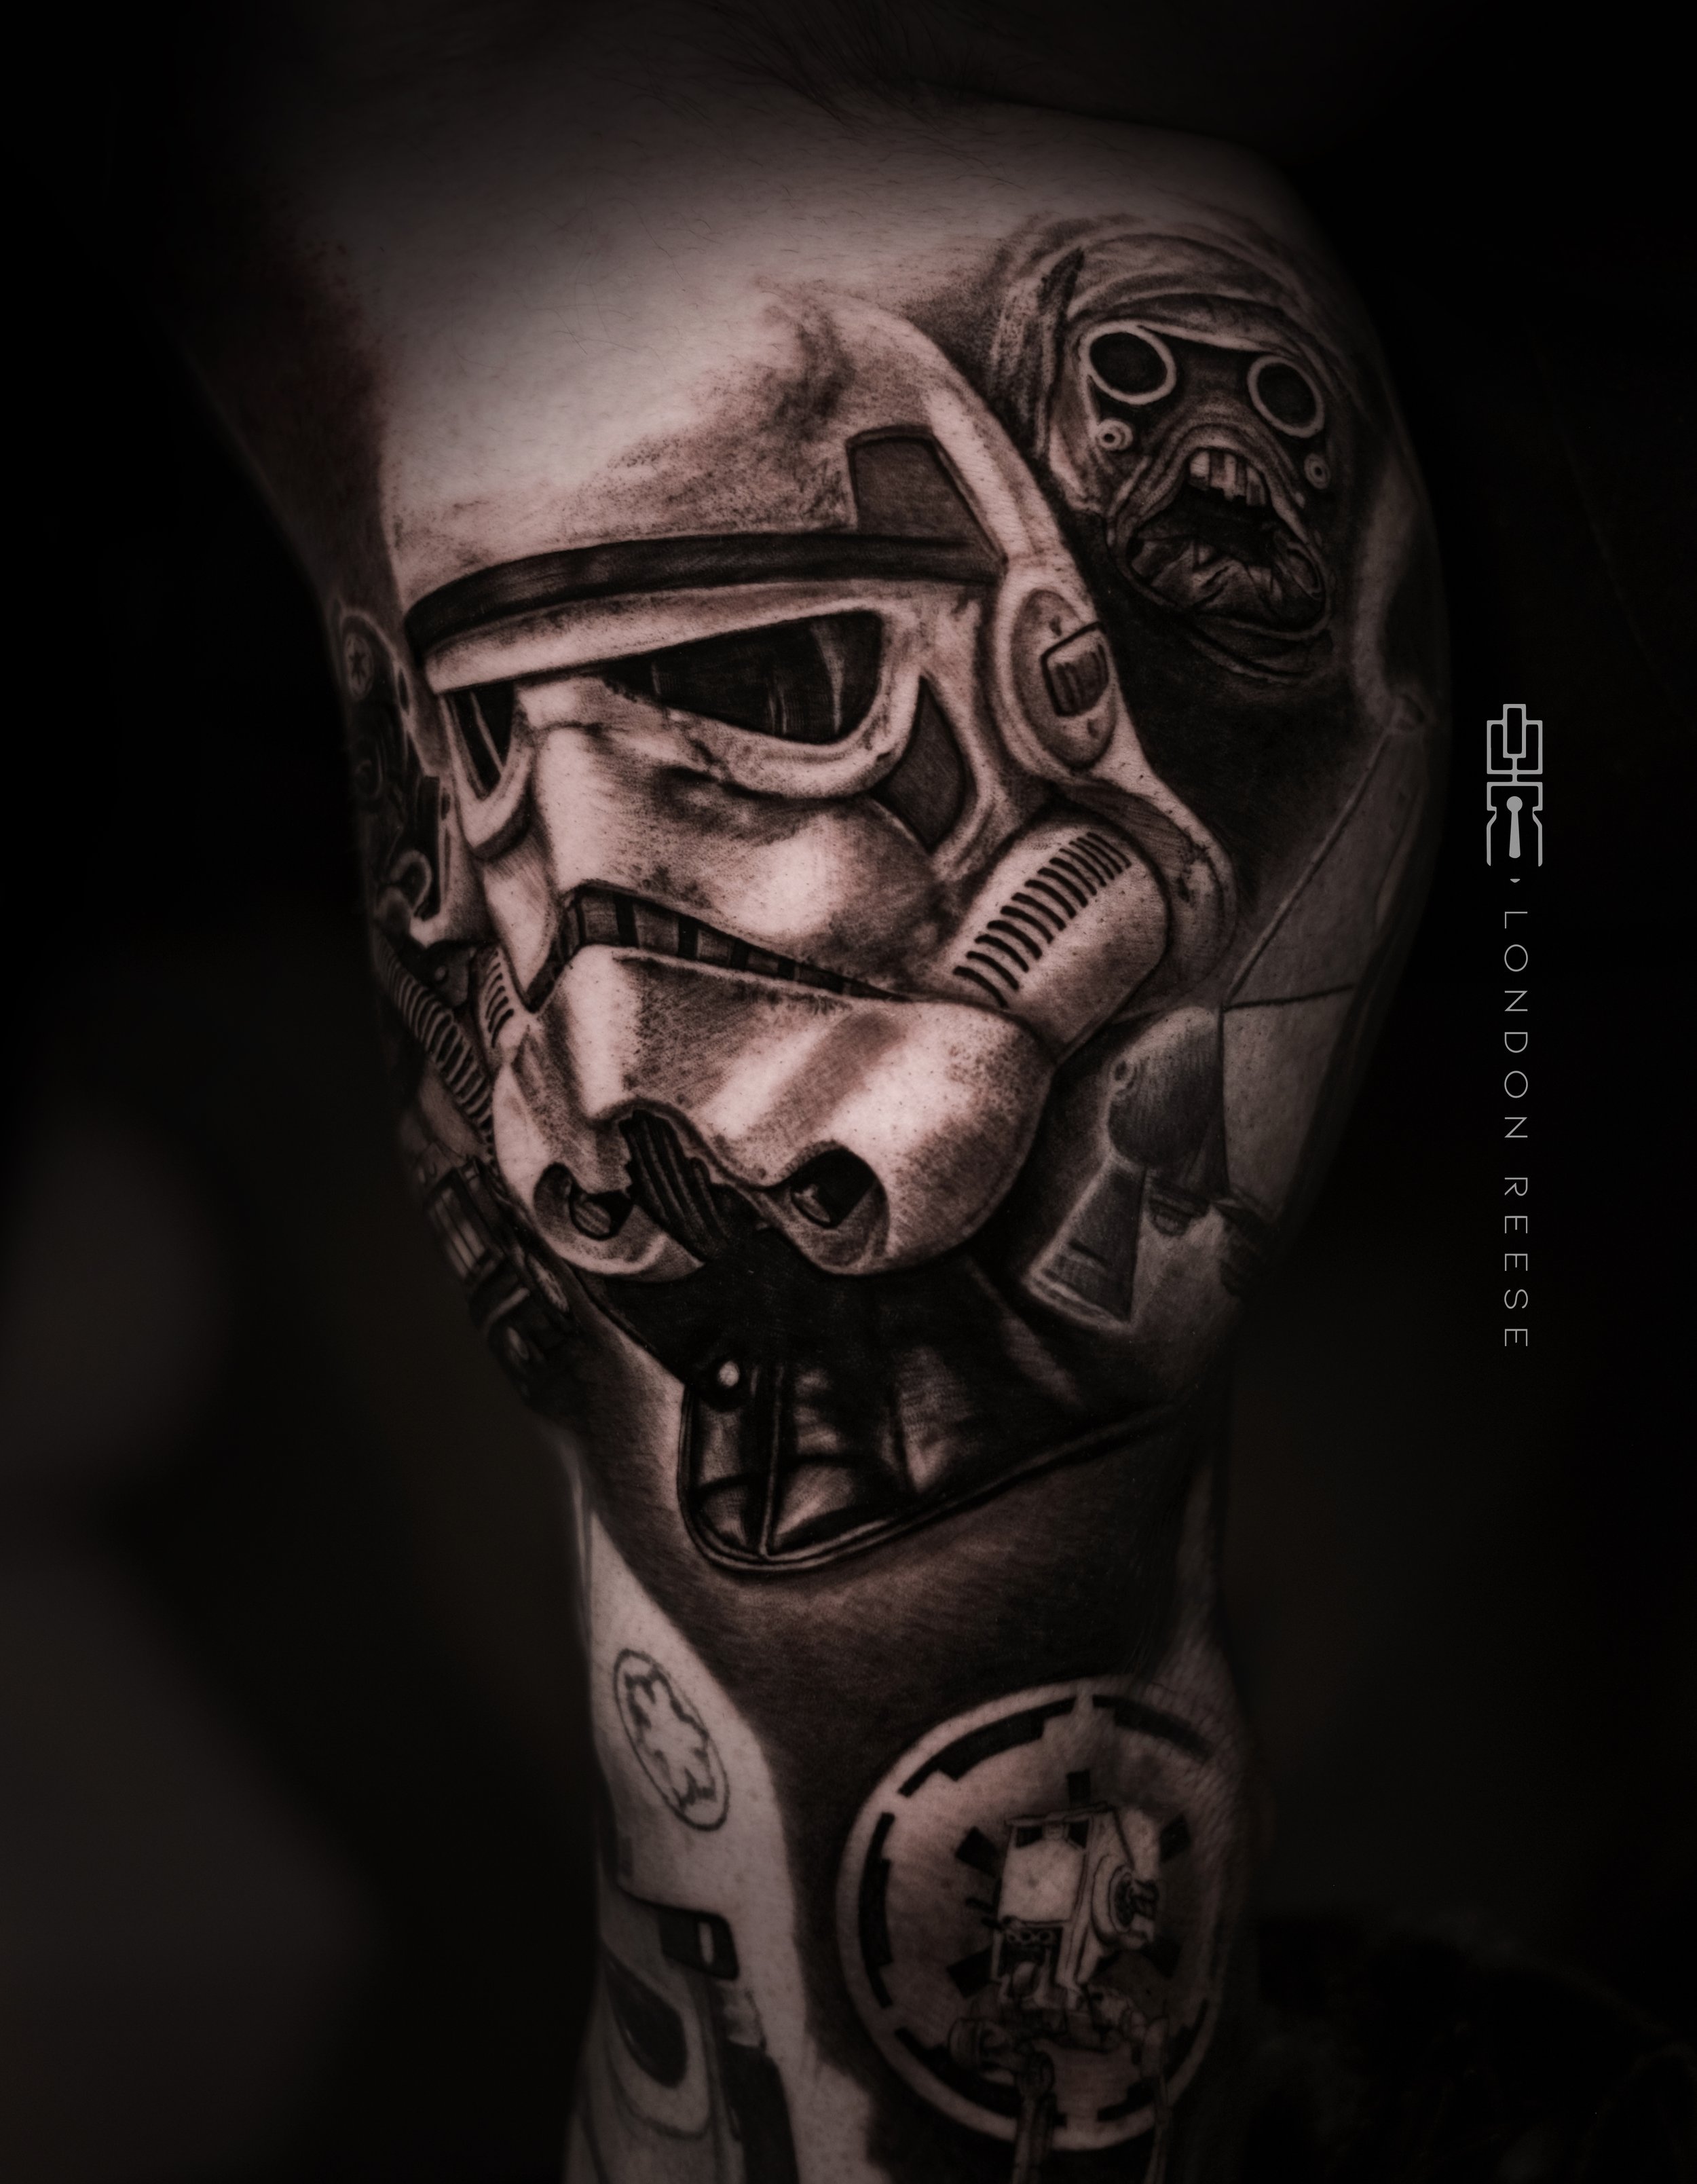 sand trooper tuskan raider tattoo.jpg